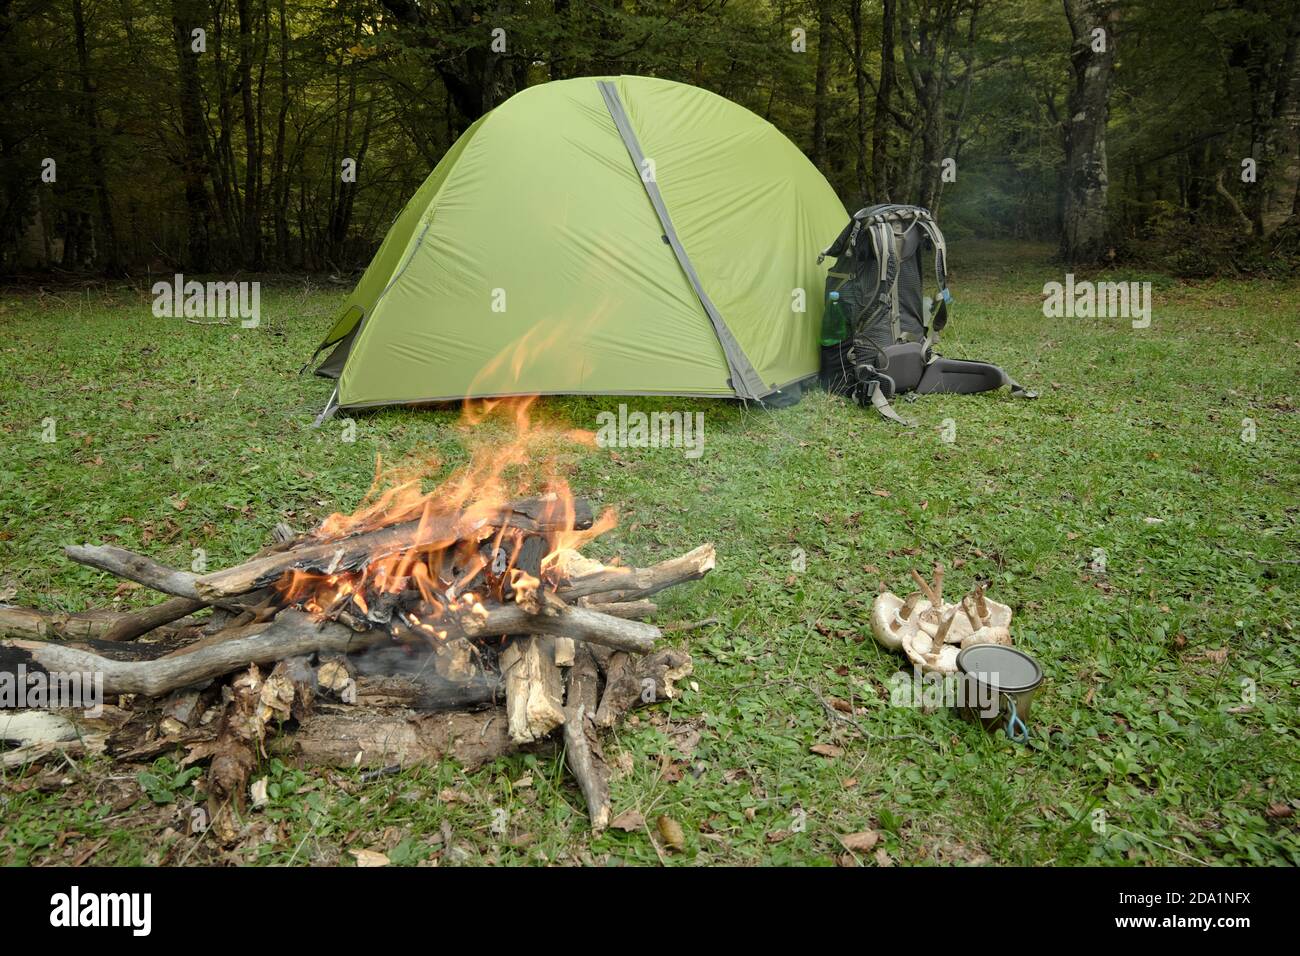 Tente verte, sac à dos, feu de camp, champignons et coupe sur l'herbe du parc Nebrodi, Sicile Banque D'Images